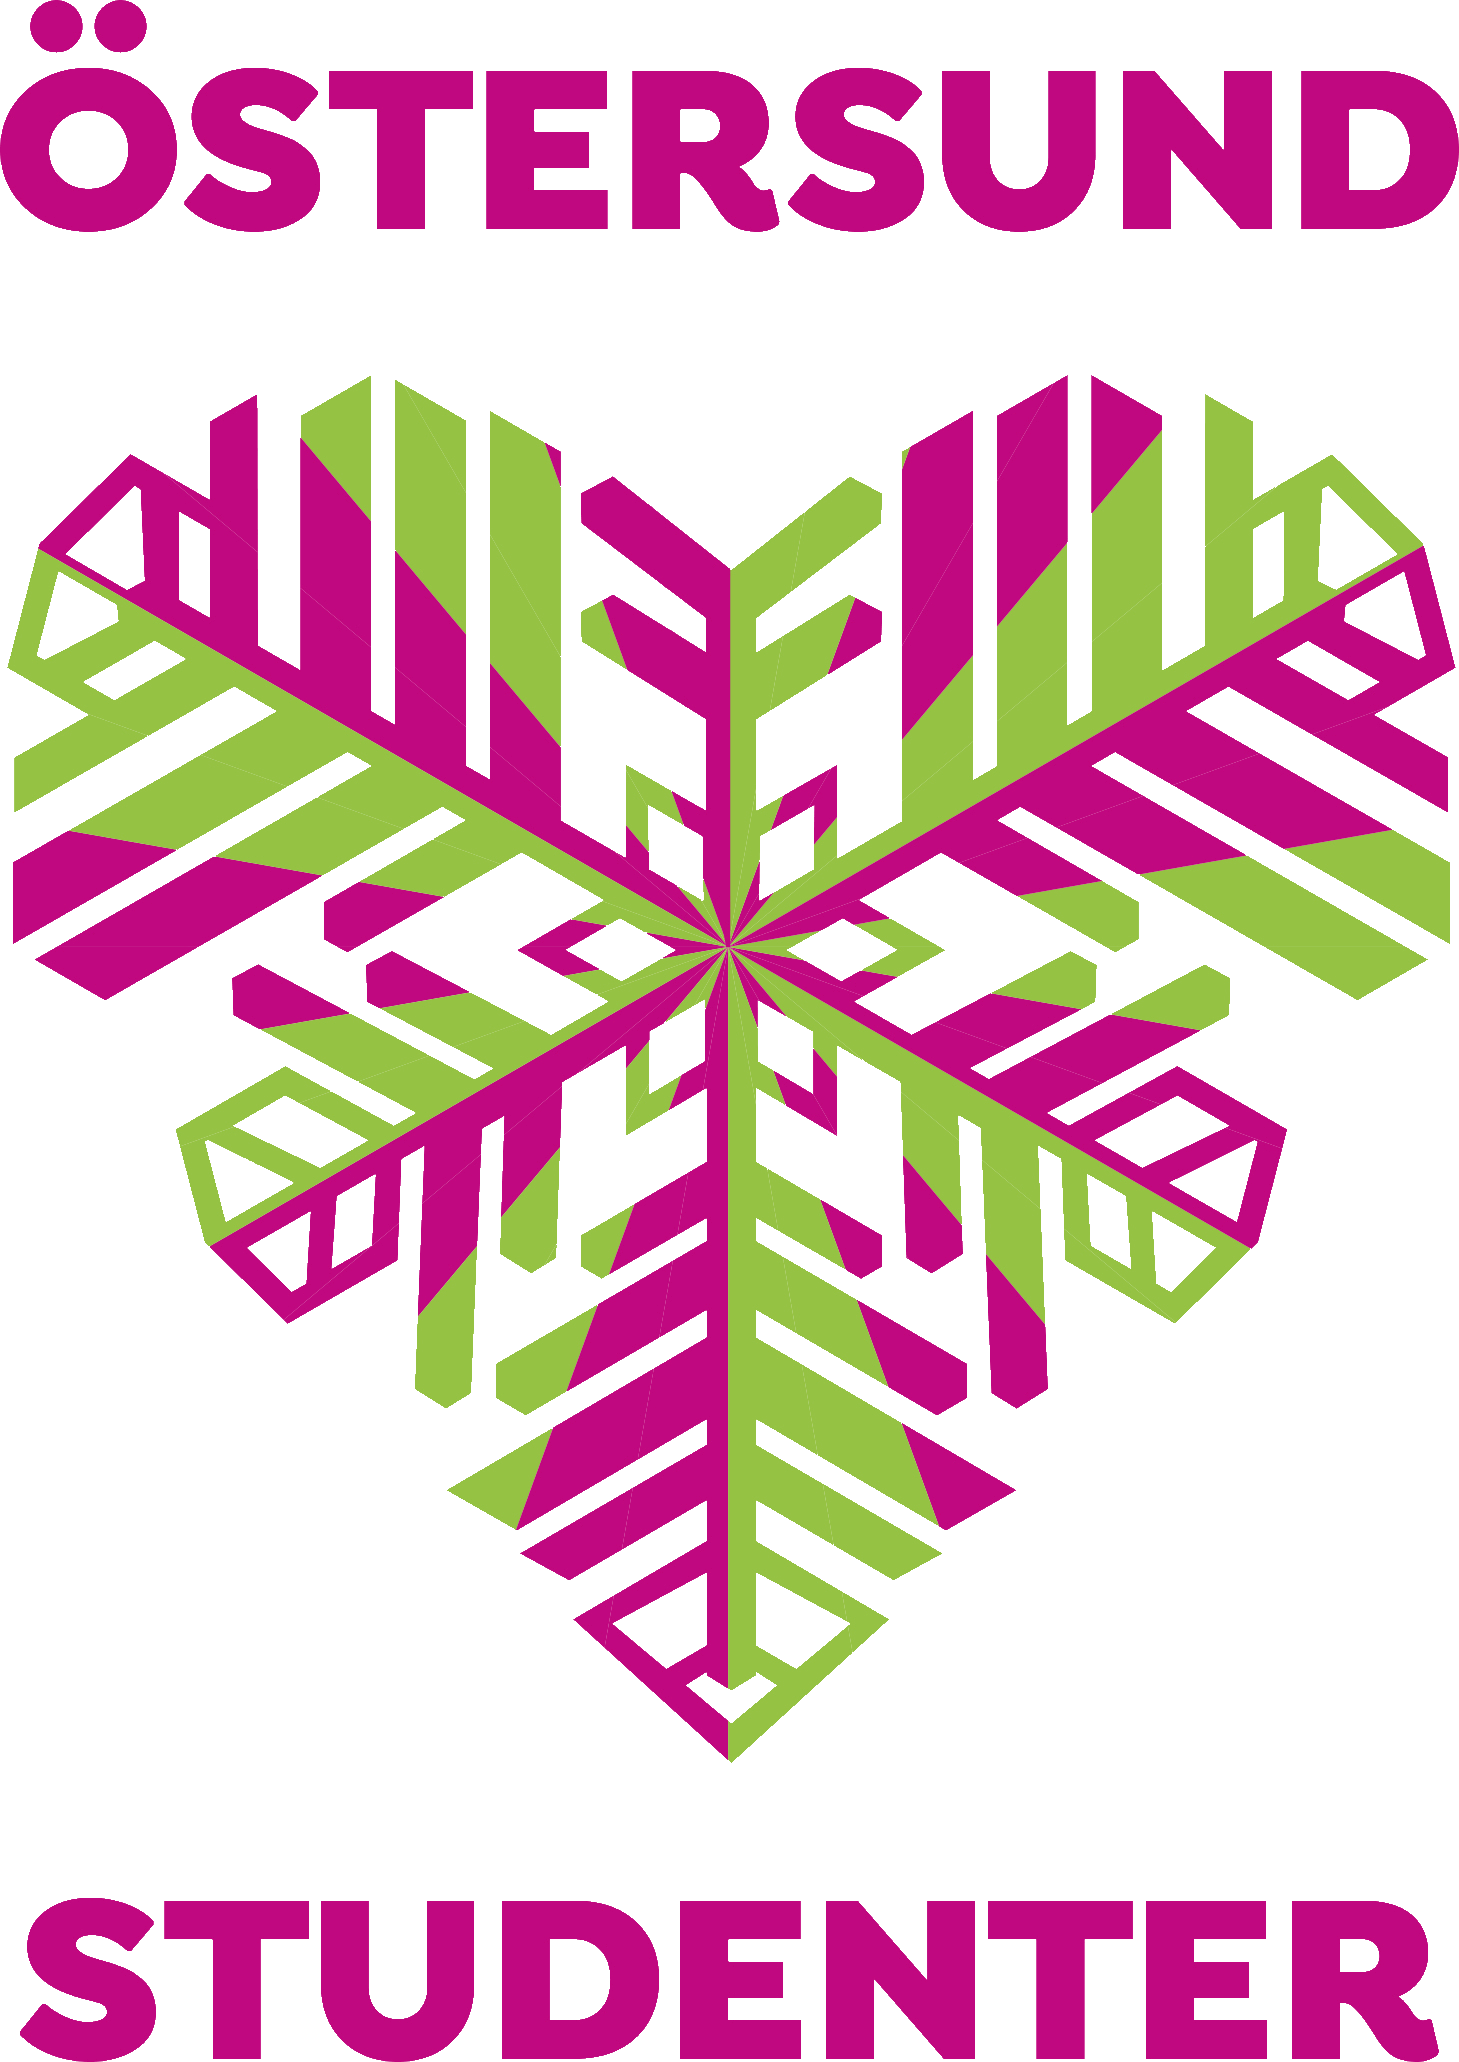 Bild på en logga i lila och grön där det står Östersund Hjärta (bild på ett hjärta) Studenter